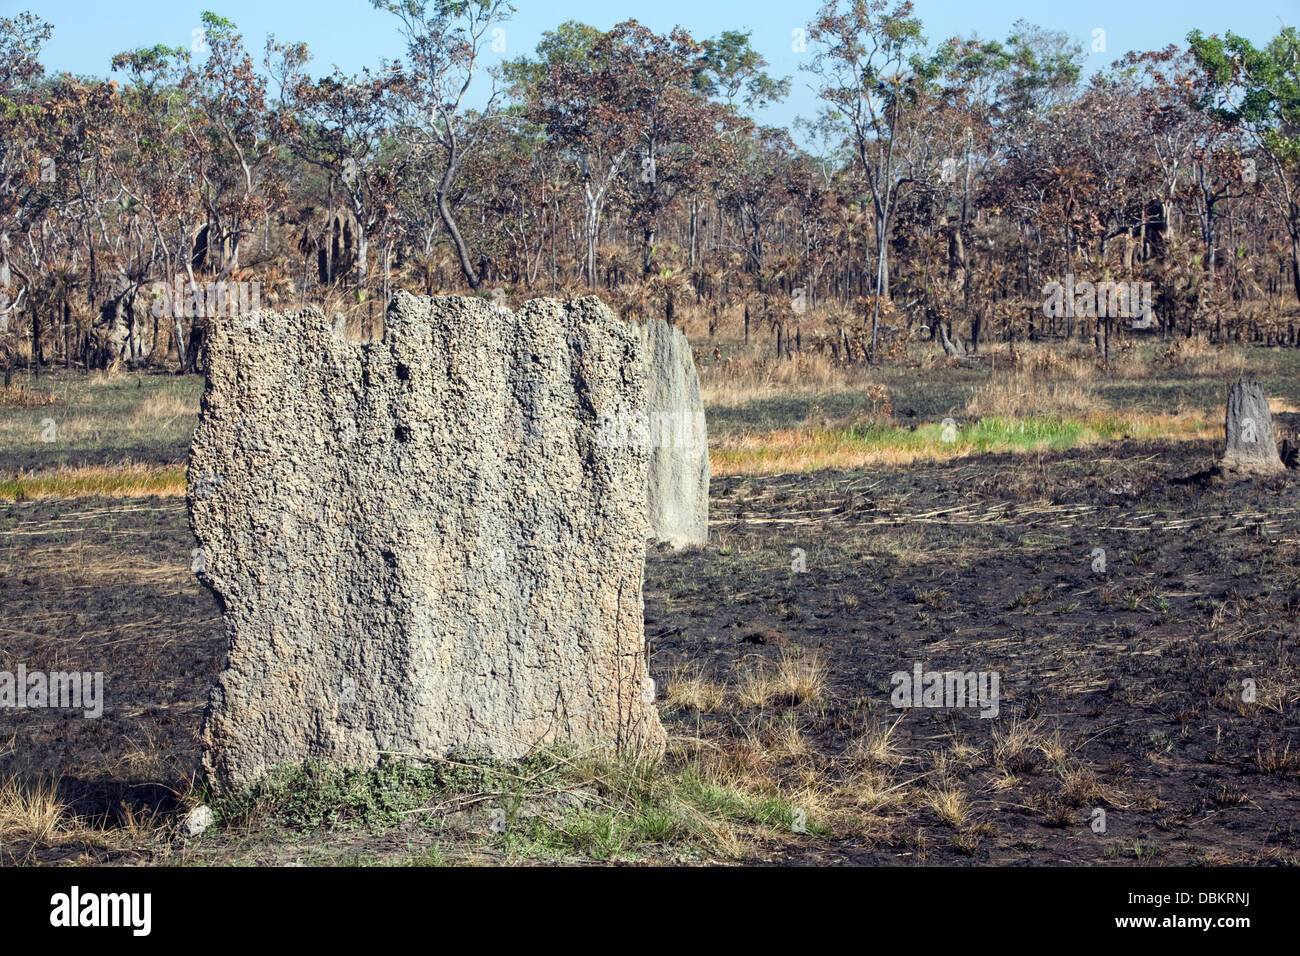 Las termitas gigantes en el territorio del norte, Australia Foto de stock